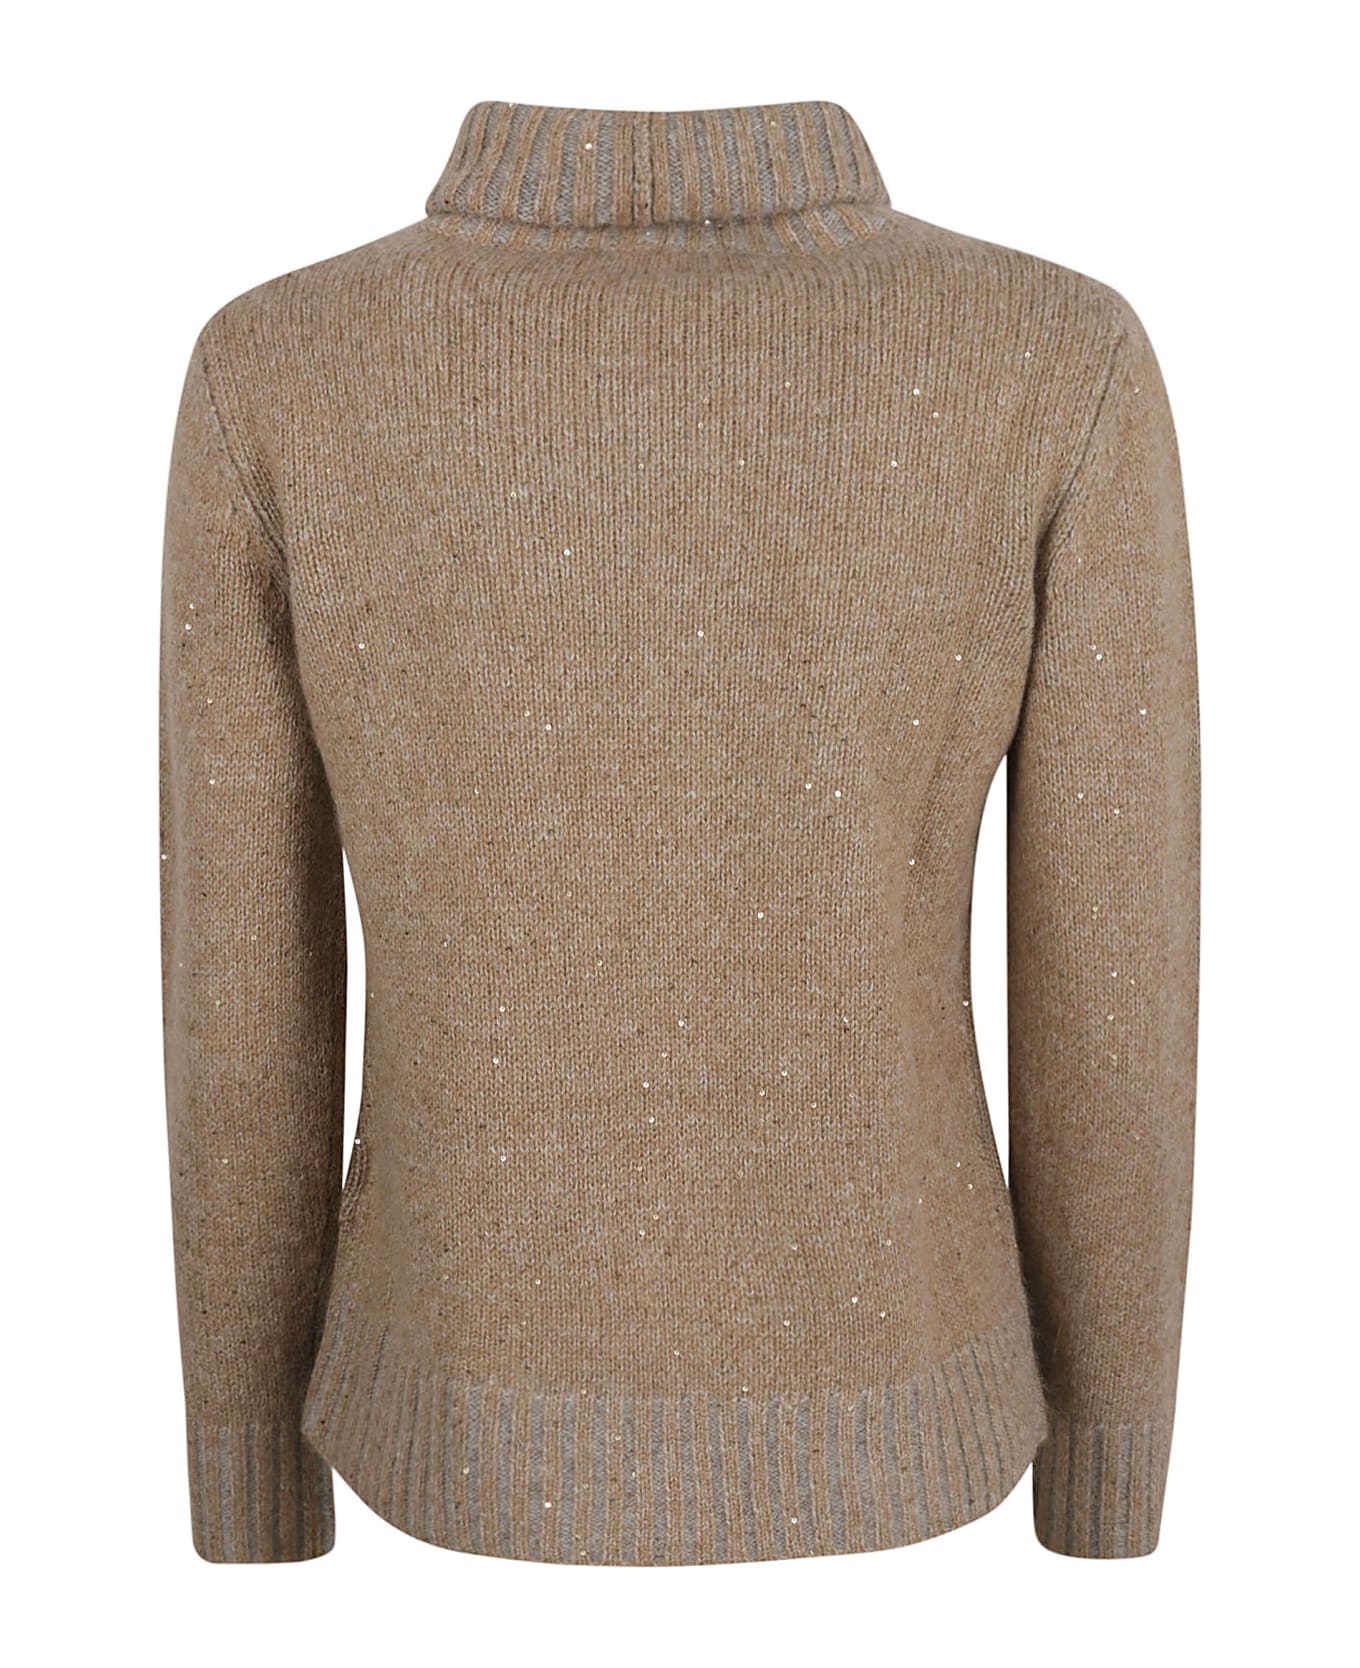 Fabiana Filippi Embellished Turtleneck Rib Sweater - Camel ニットウェア